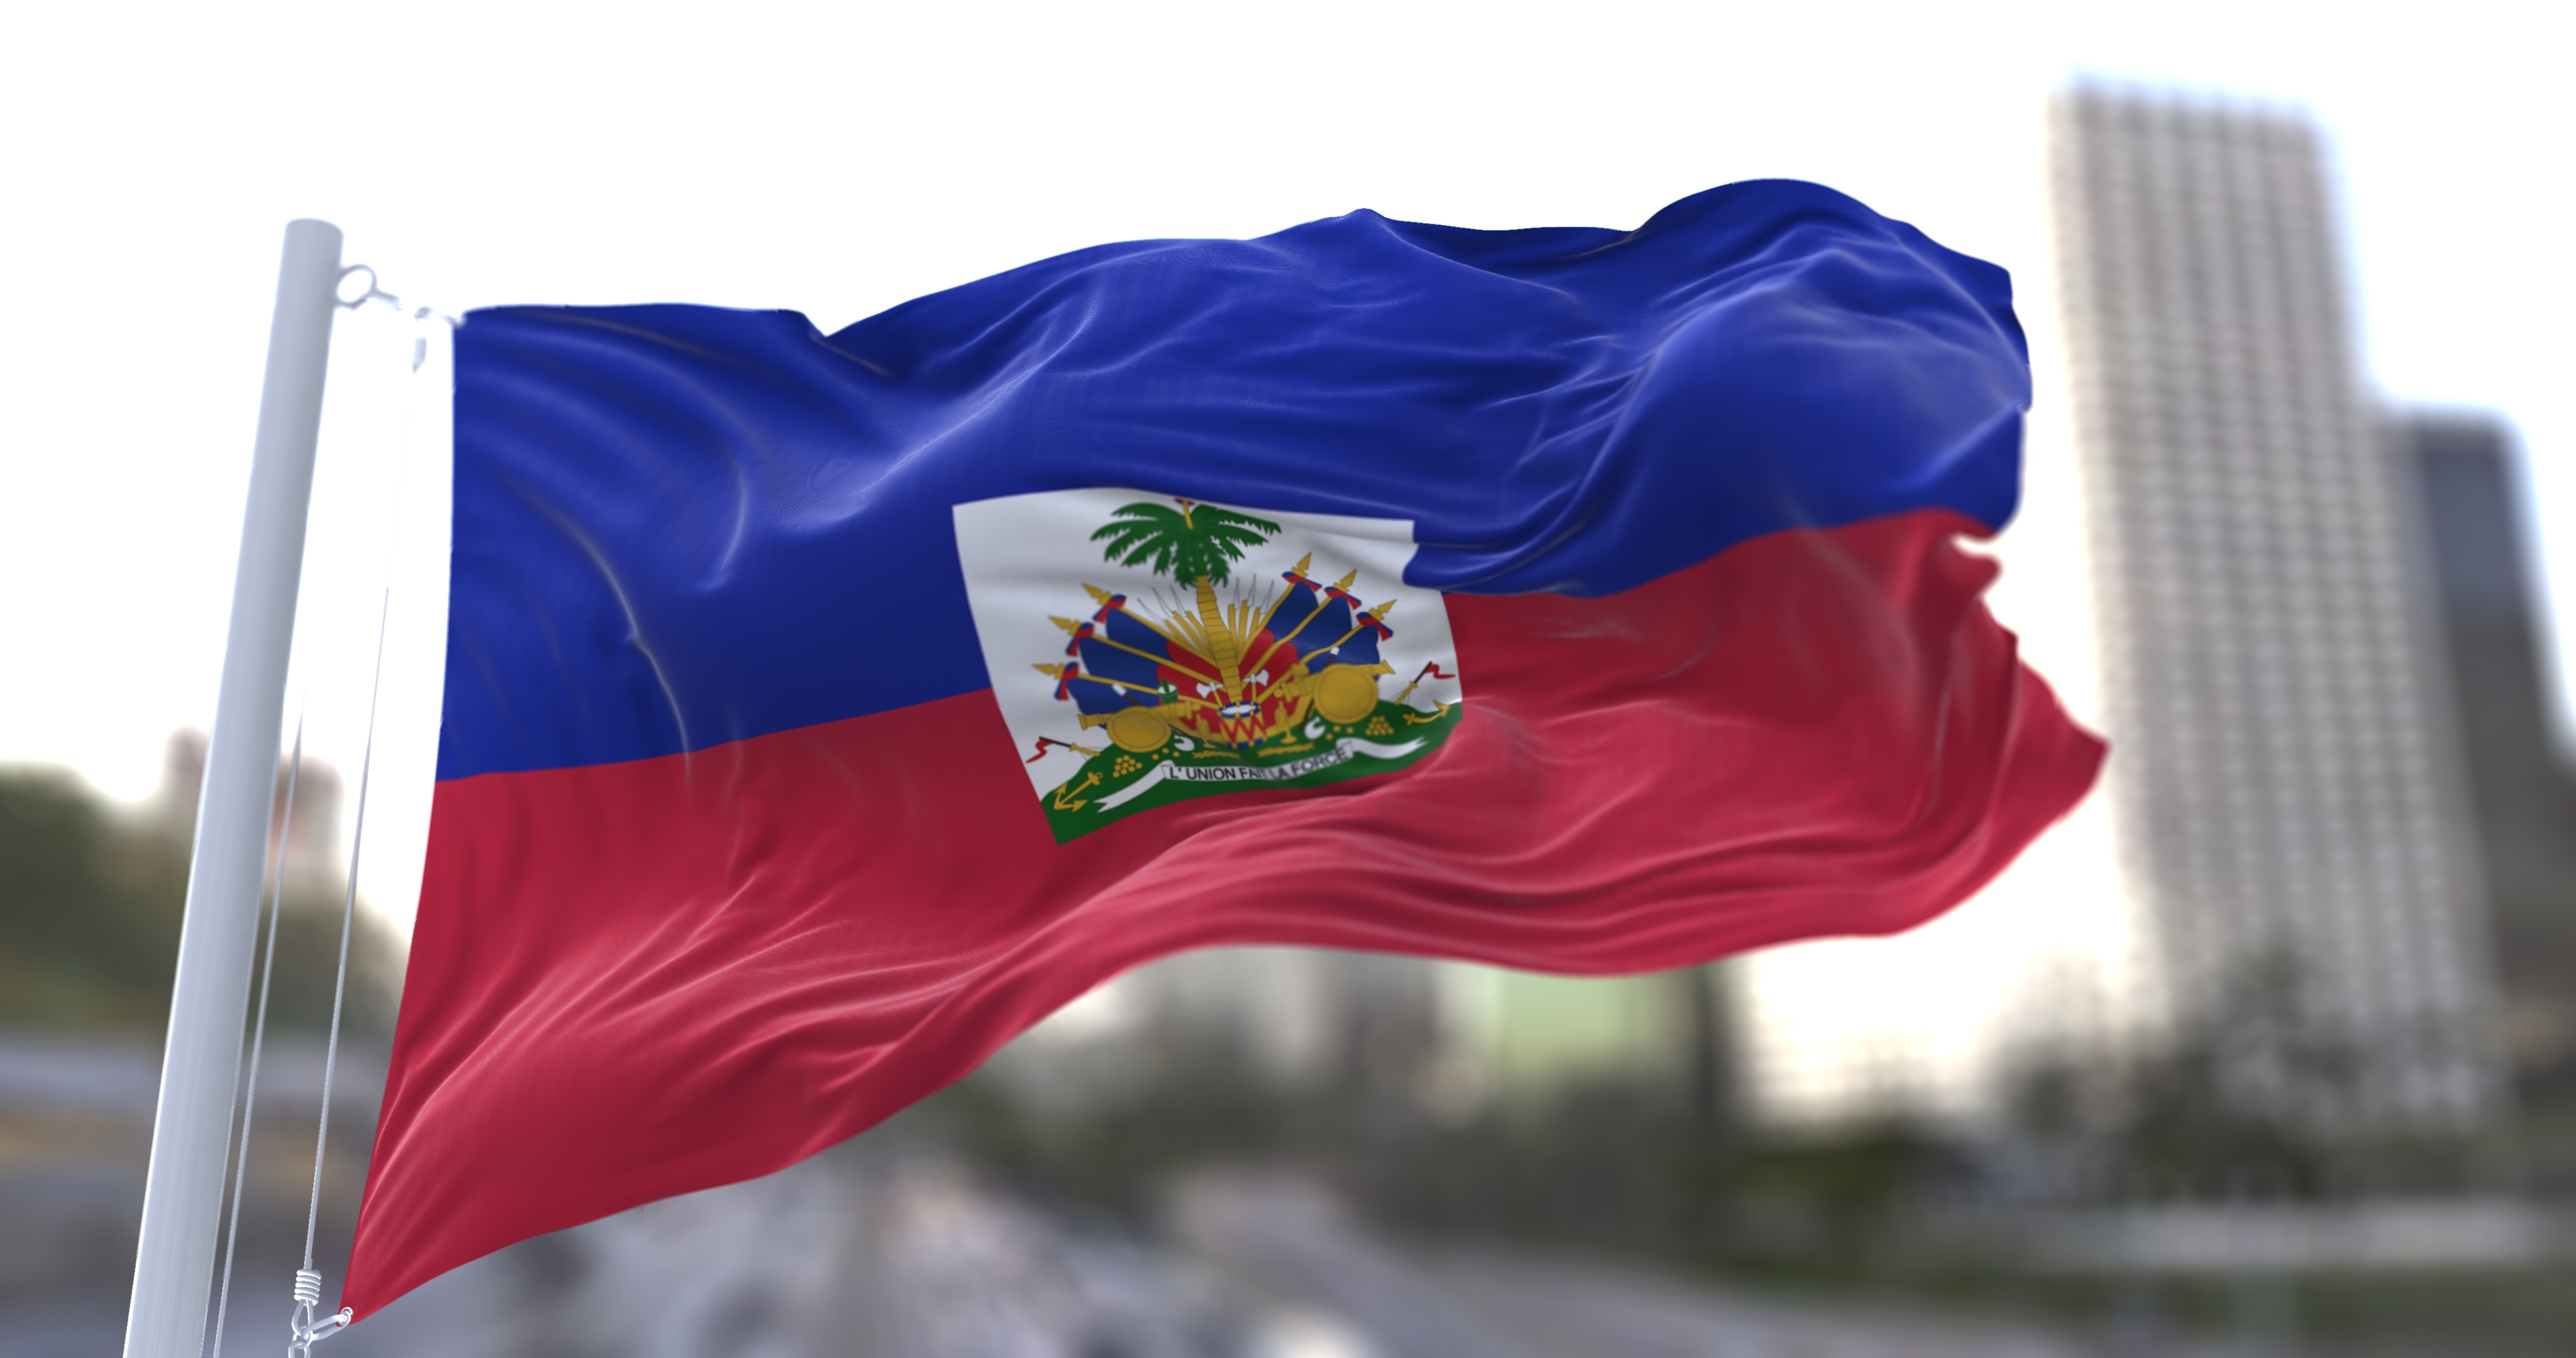     Au moins trois morts dans des manifestations anti-gouvernementales en Haïti

